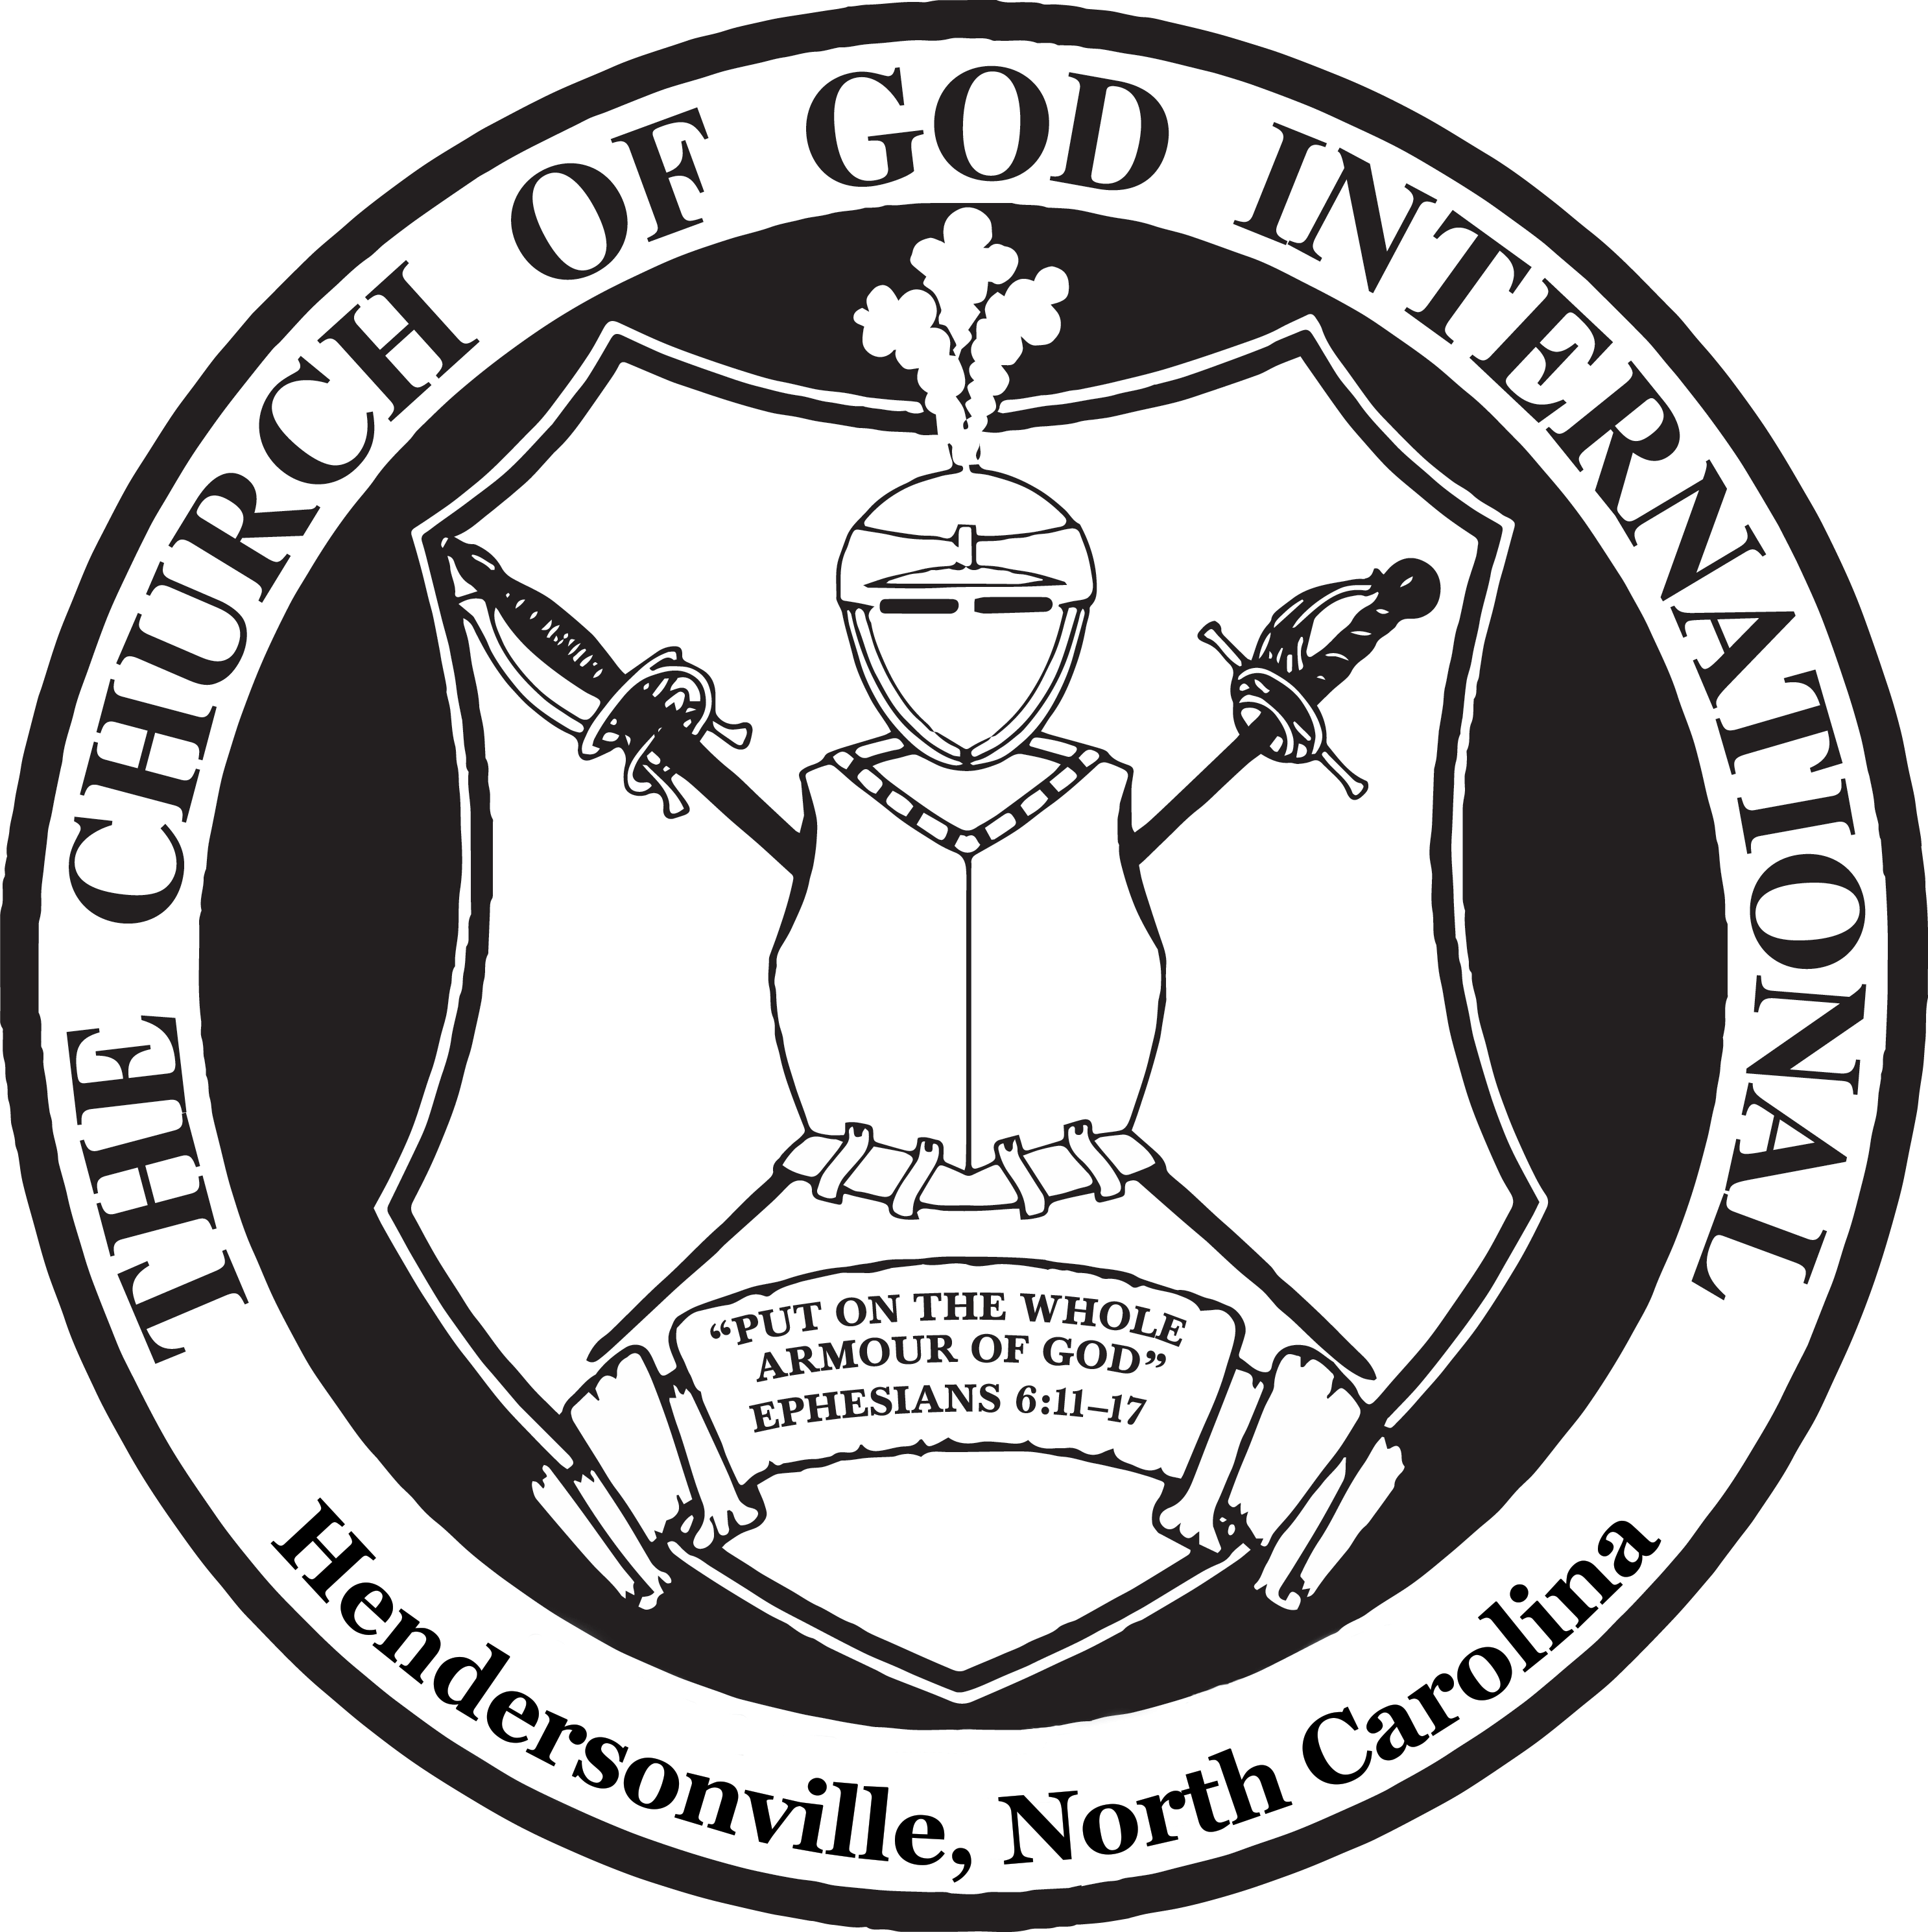 Church of God International Hendersonville